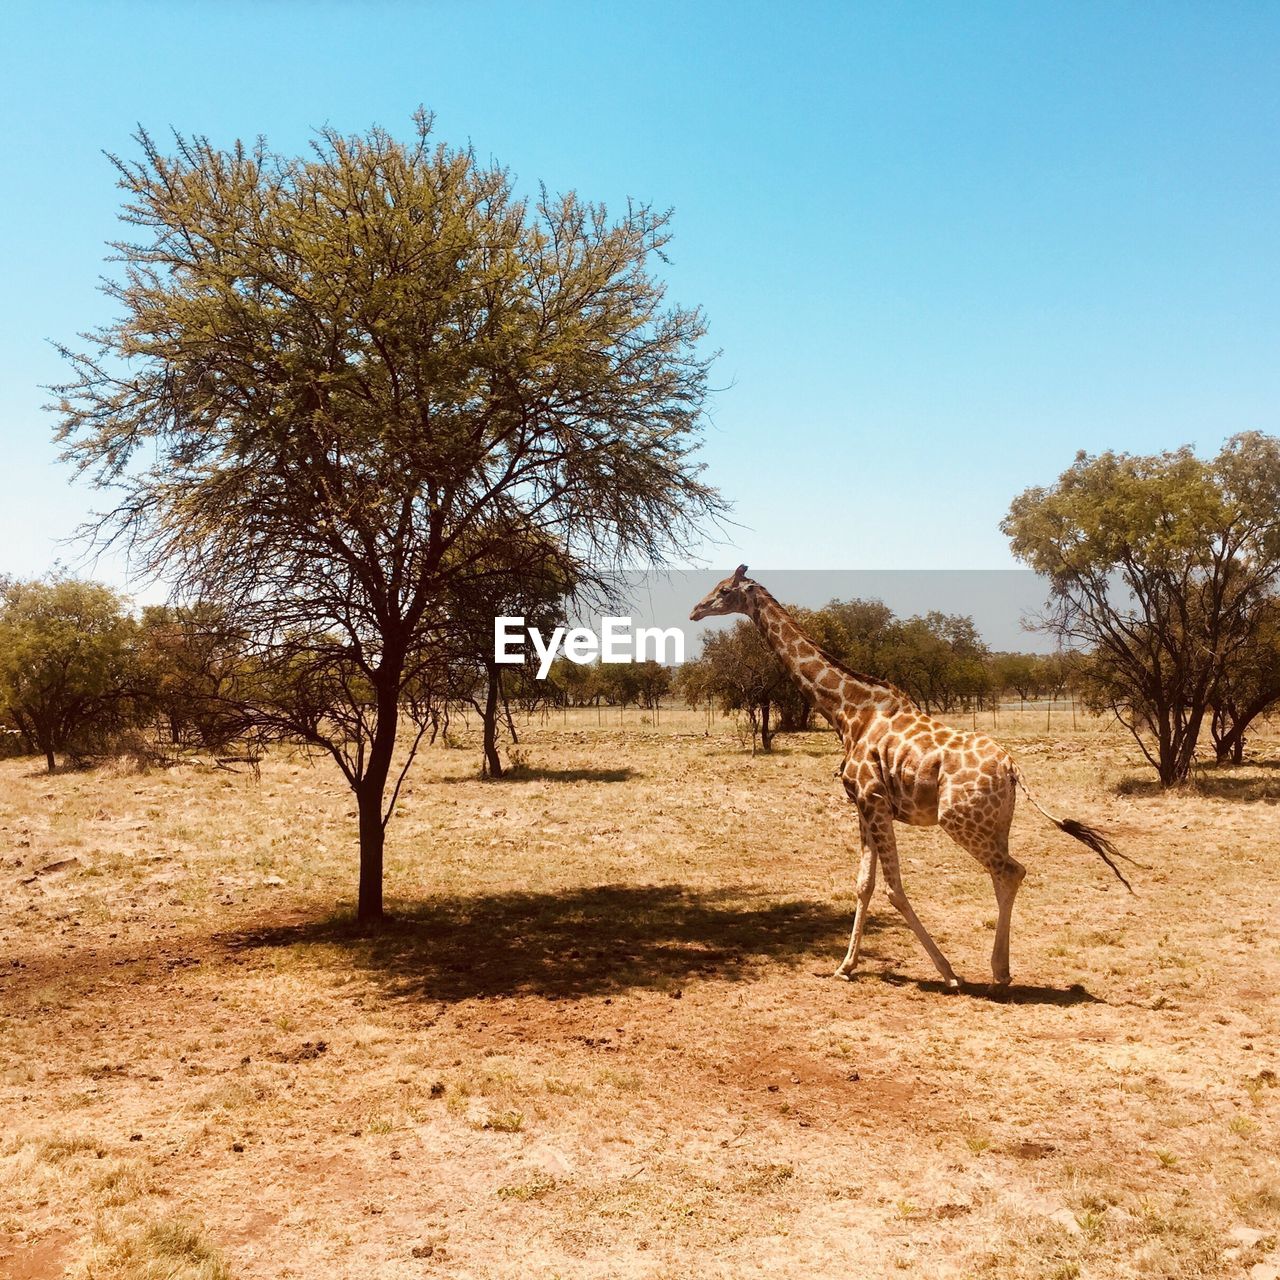 Giraffe walking by tree against clear sky